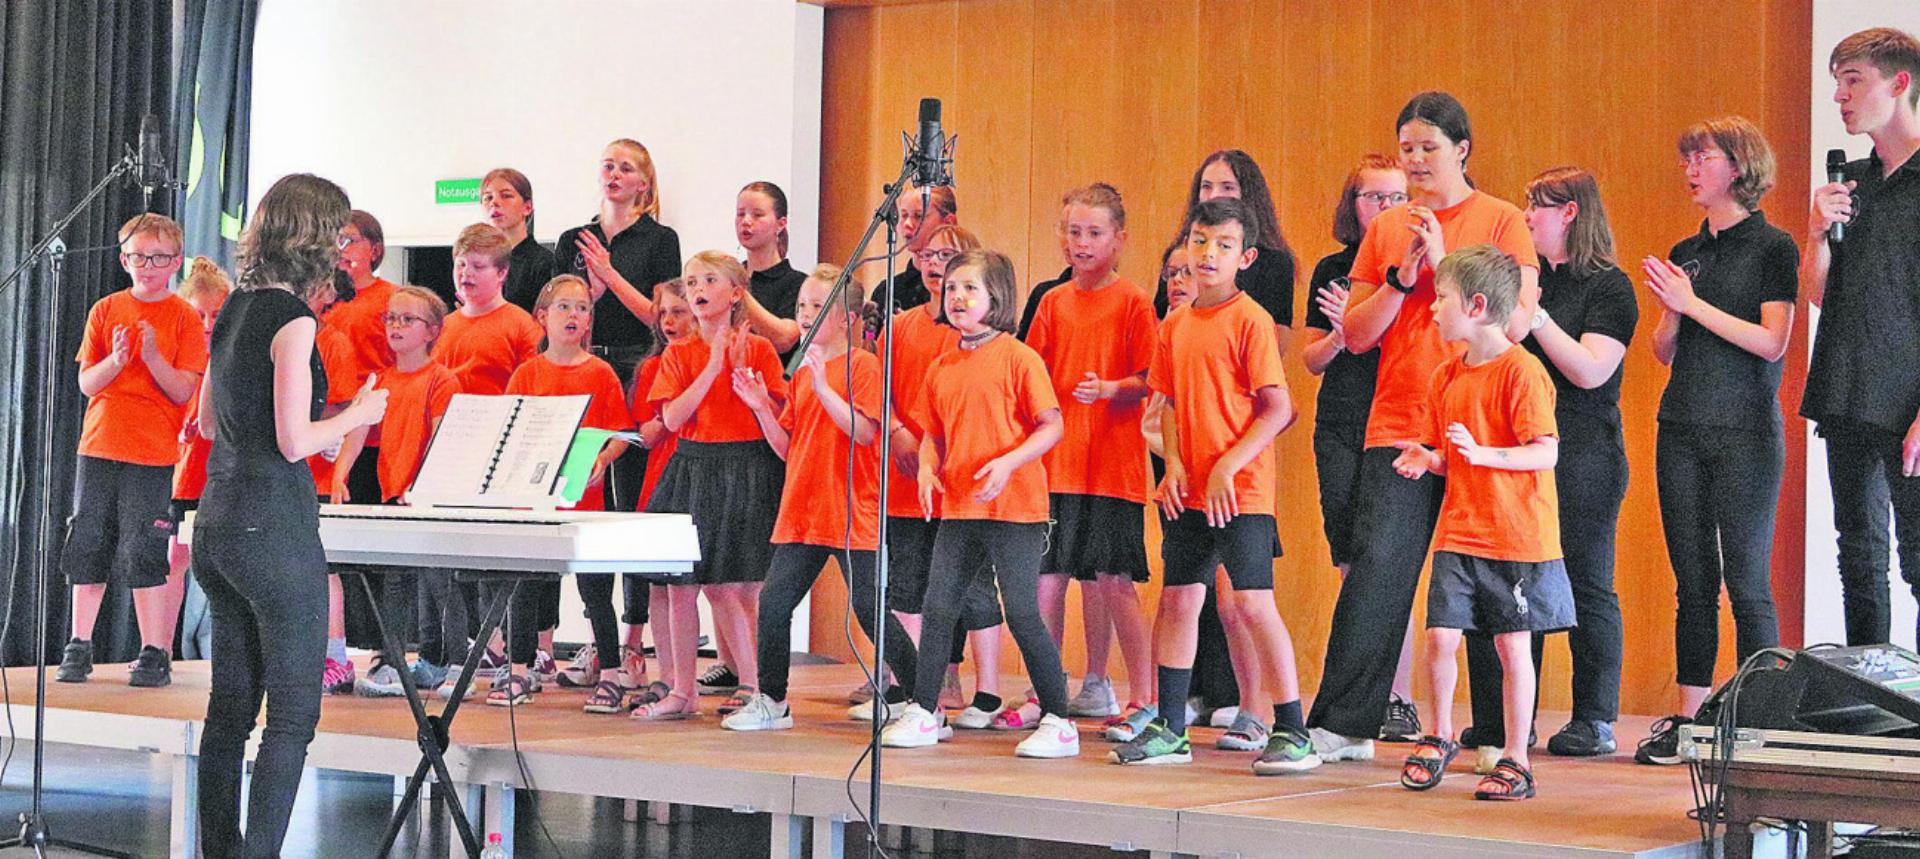 Am Konzert der Klosterspatzen sangen die Kinder und Jugendlichen 17 Lieder mit unterschiedlichen Formationen. Fotos: ci